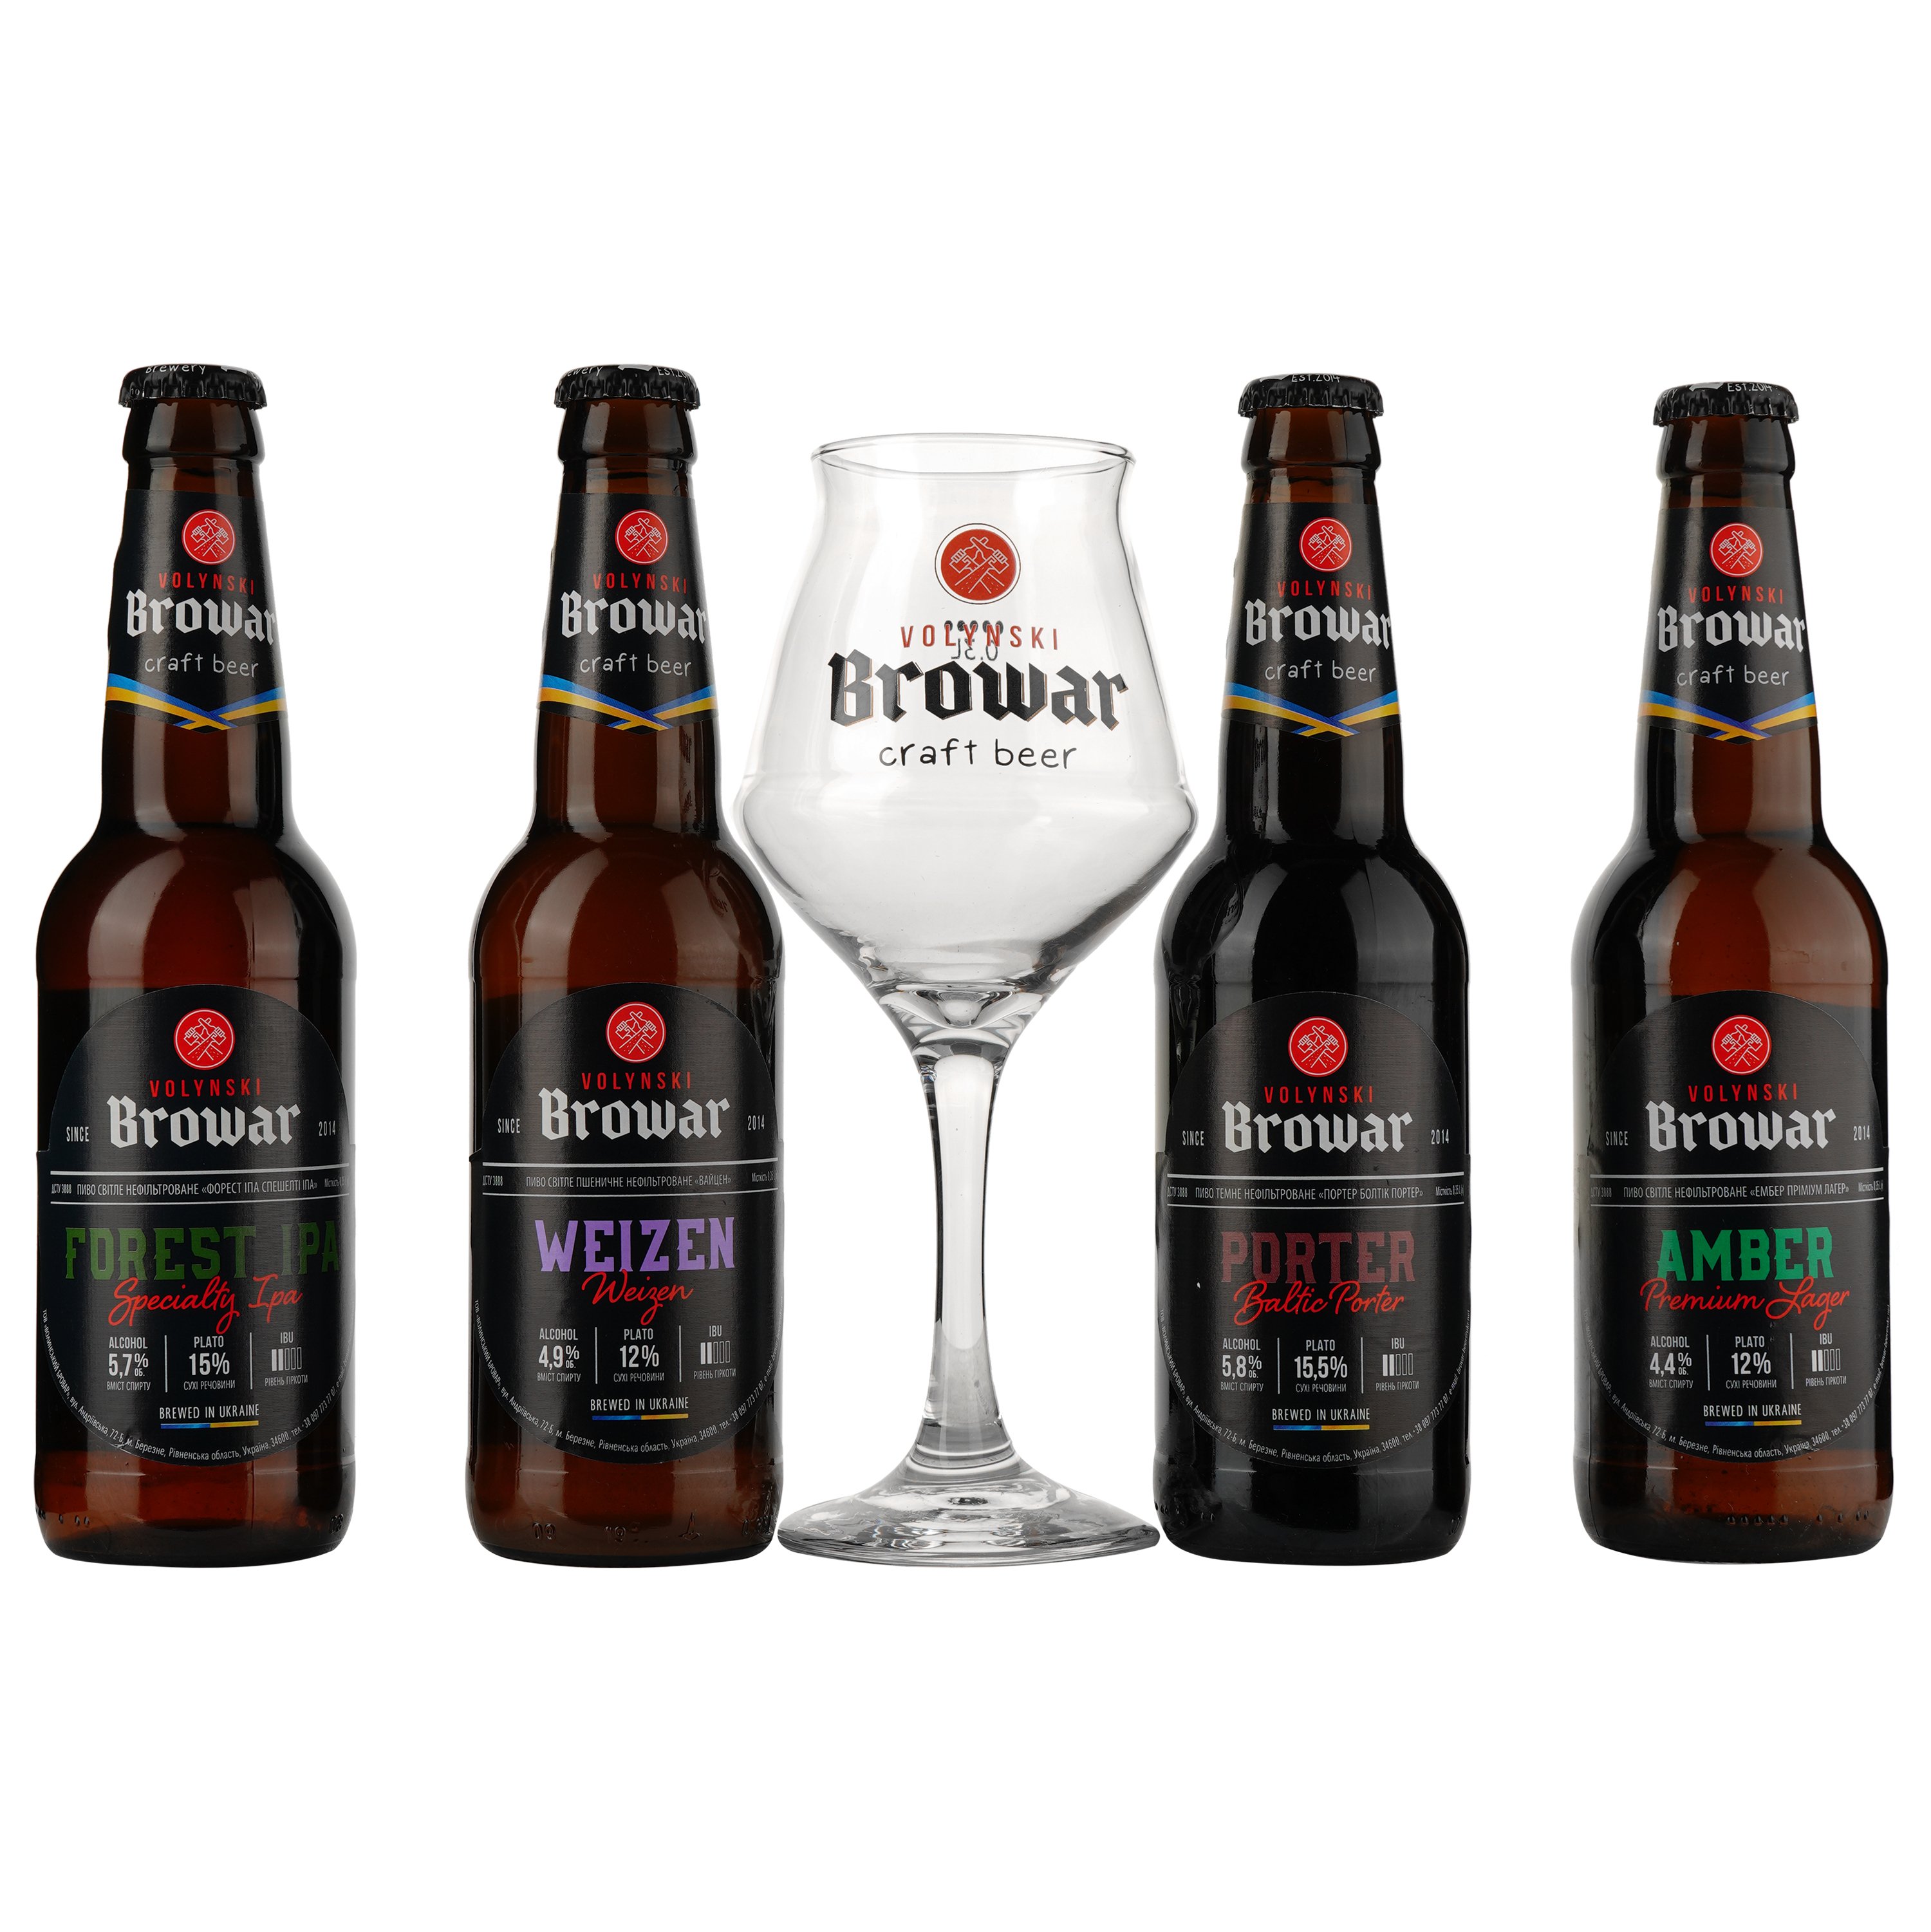 Подарочный набор пива Volynski Browar, 3,8-5,8%, 1,4 л (4 шт. по 0,35 л) + Бокал Somelier, 0,4 л - фото 2